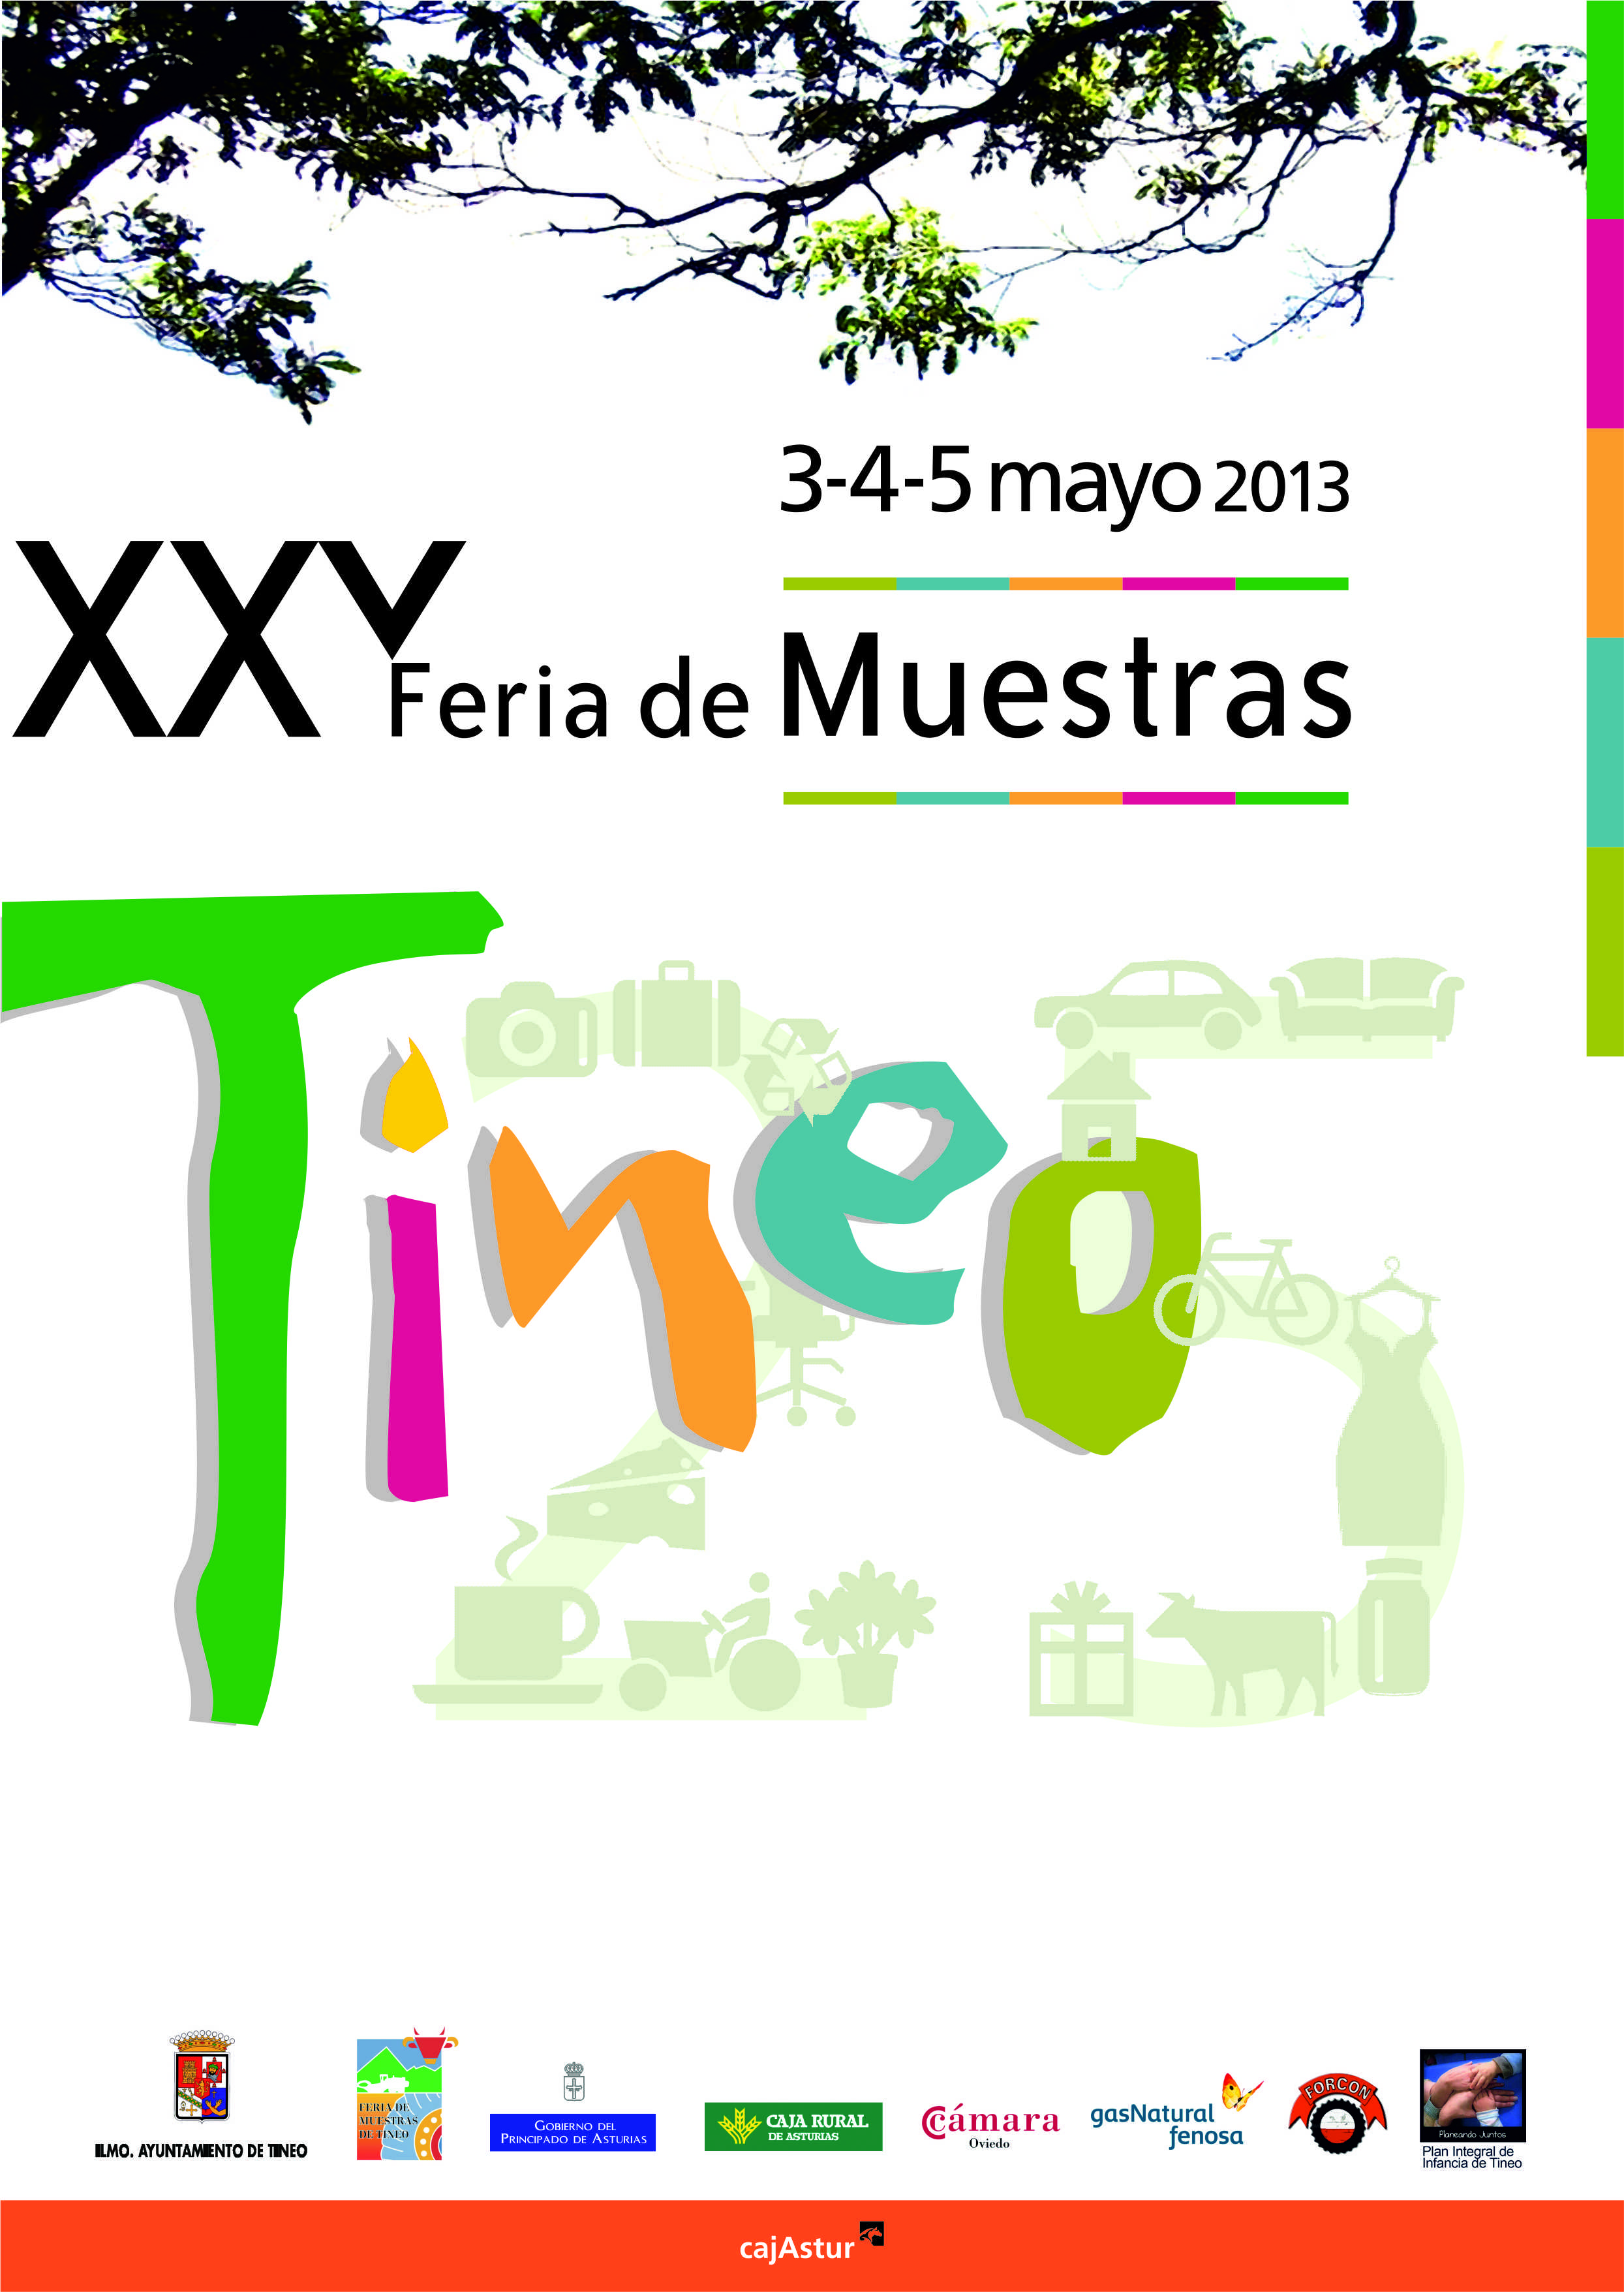 XXV Feria Tineo